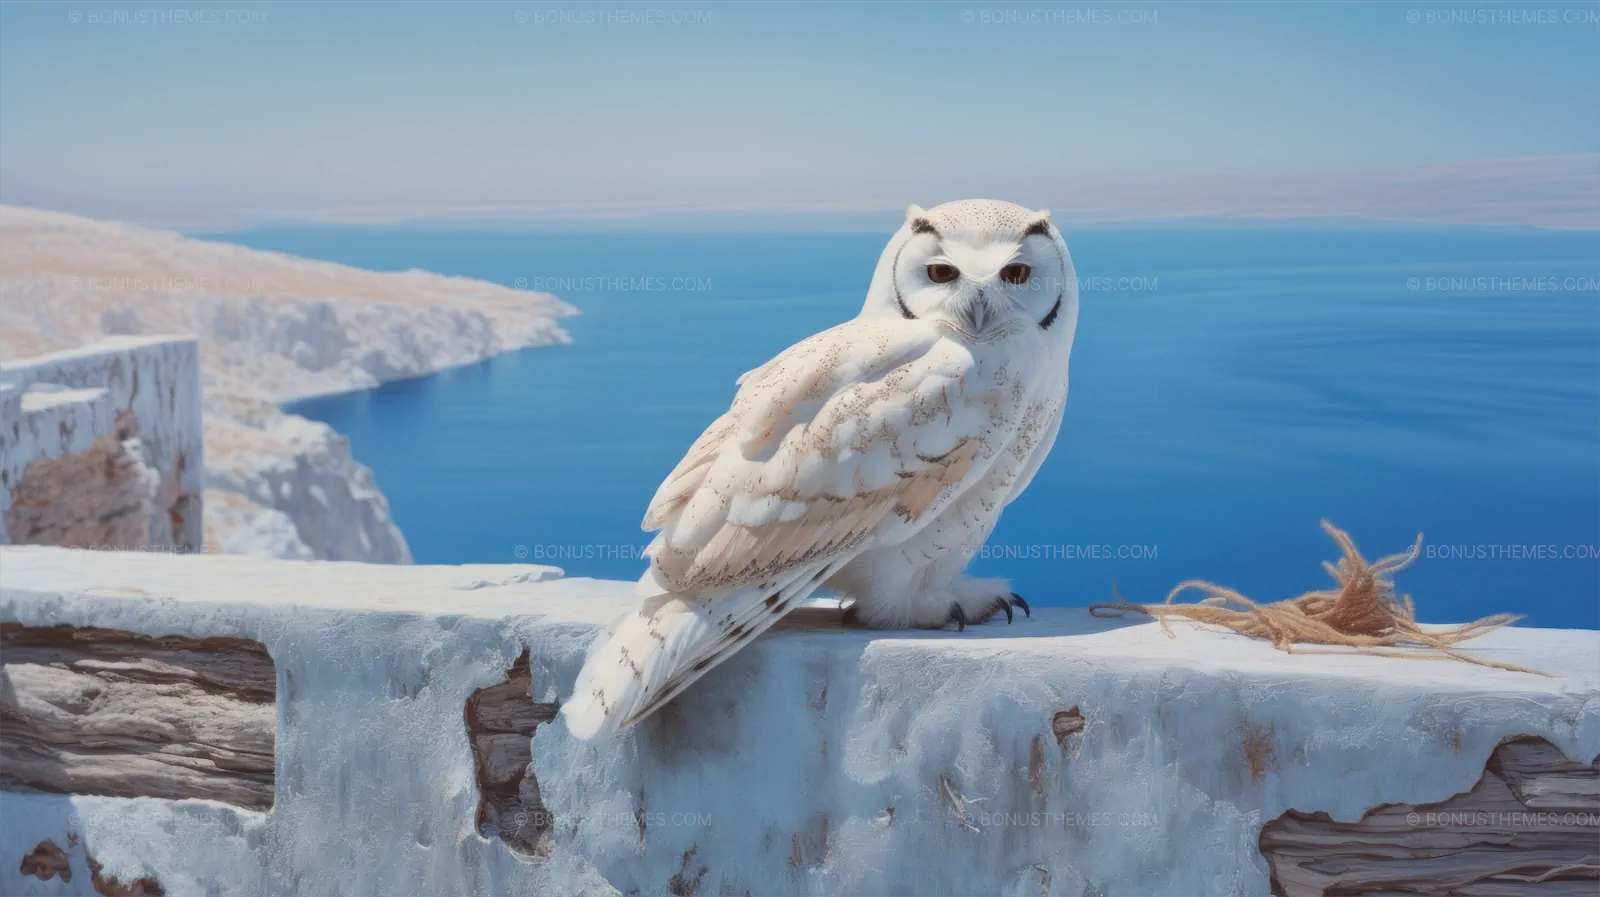 Aegean wildlife white owl